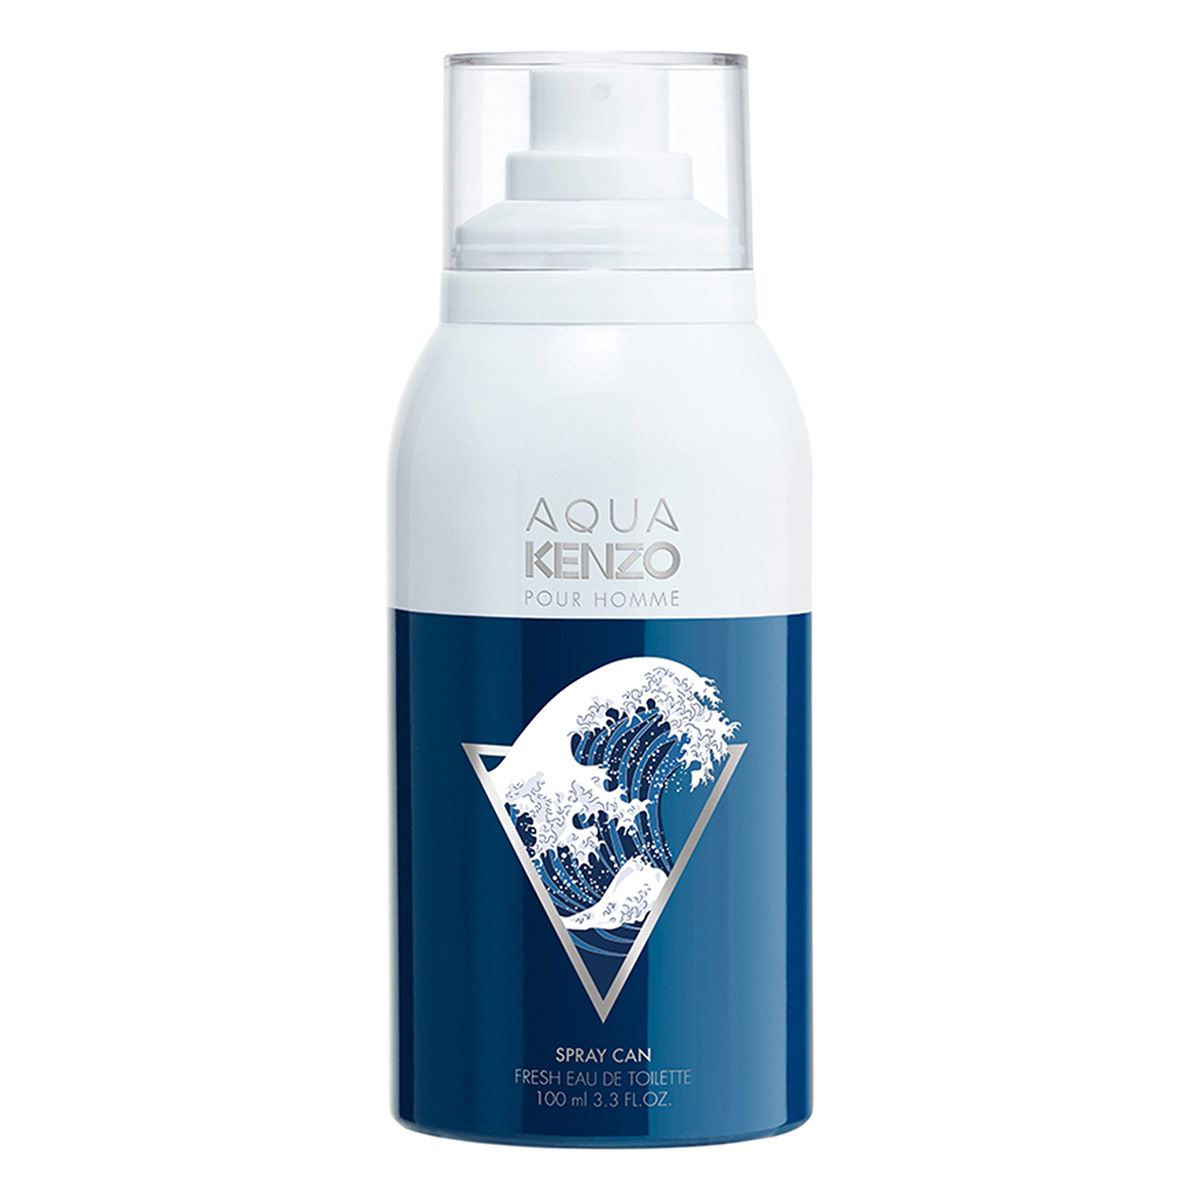 Aqua Kenzo Pour Homme Spray Can, Eau de Toilette 100 ml